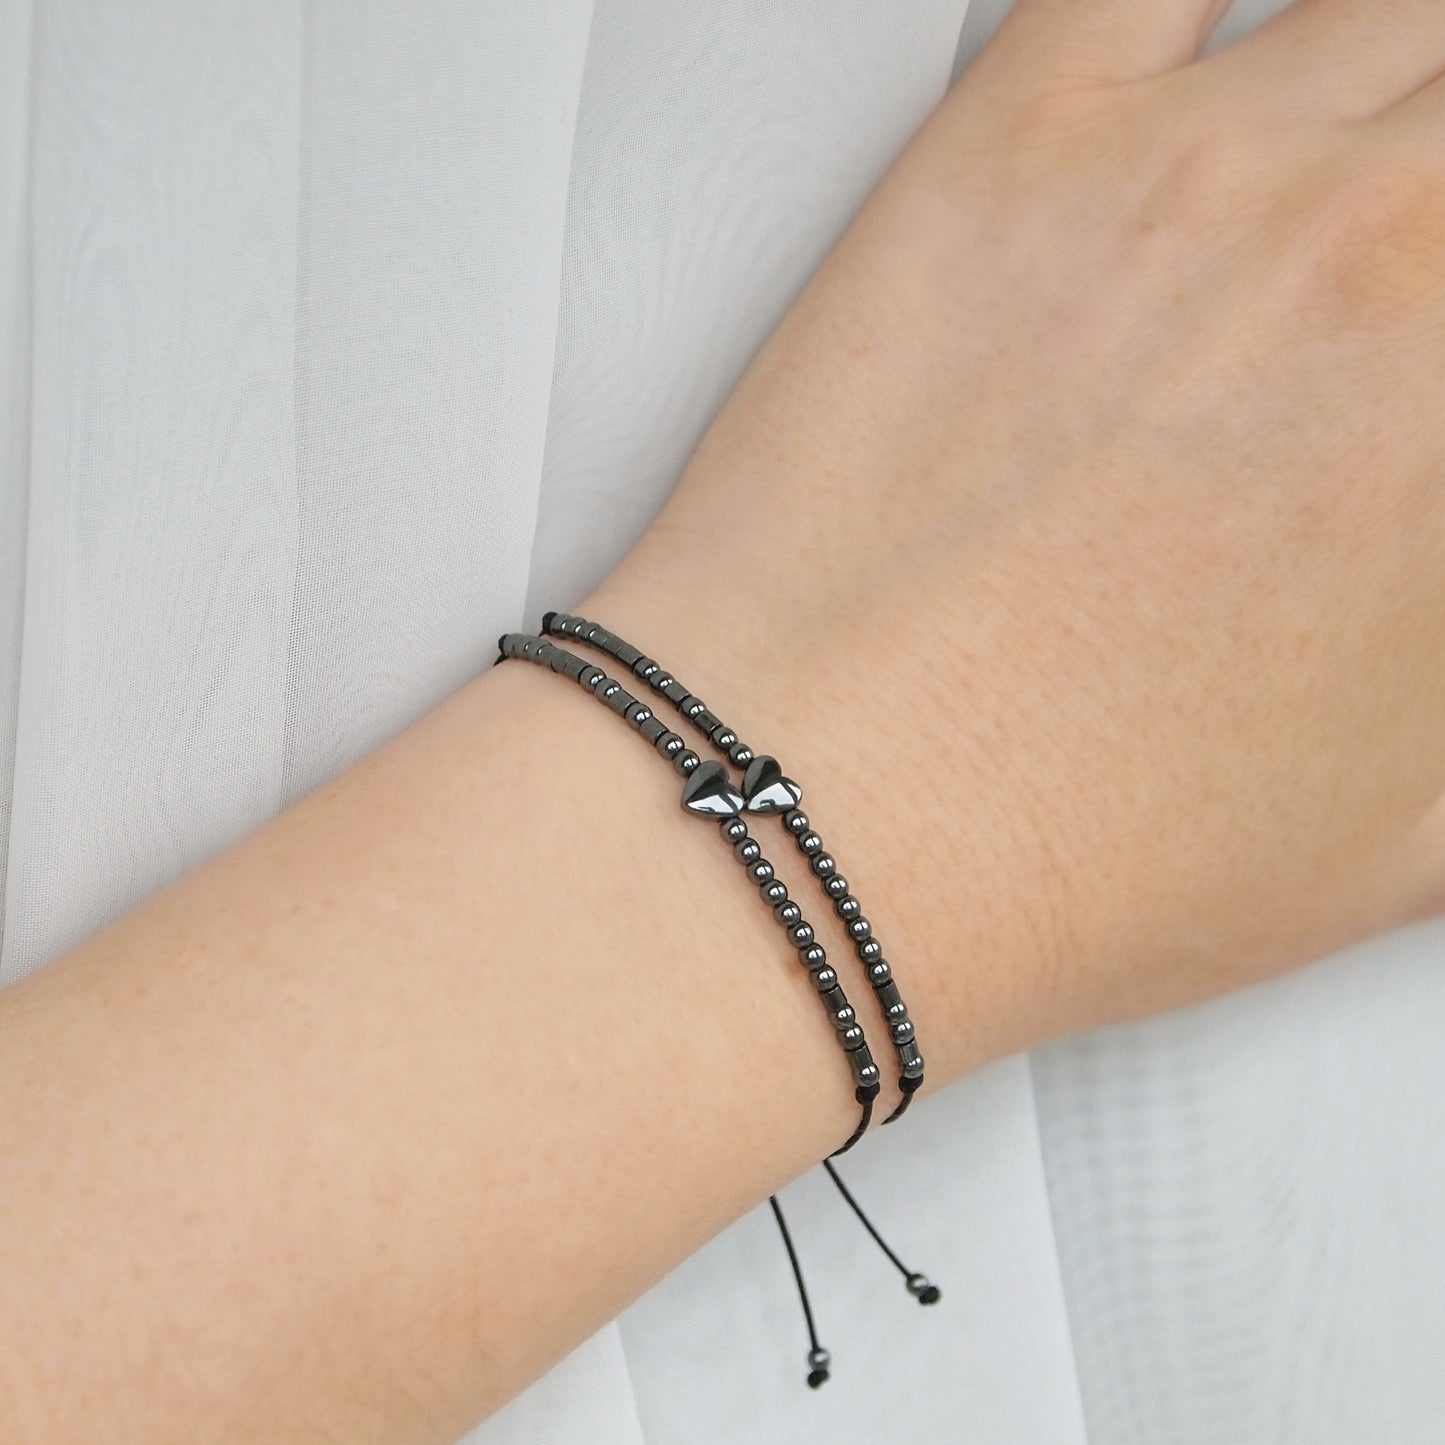 meaningful bracelets for best friends, soul sister bracelets